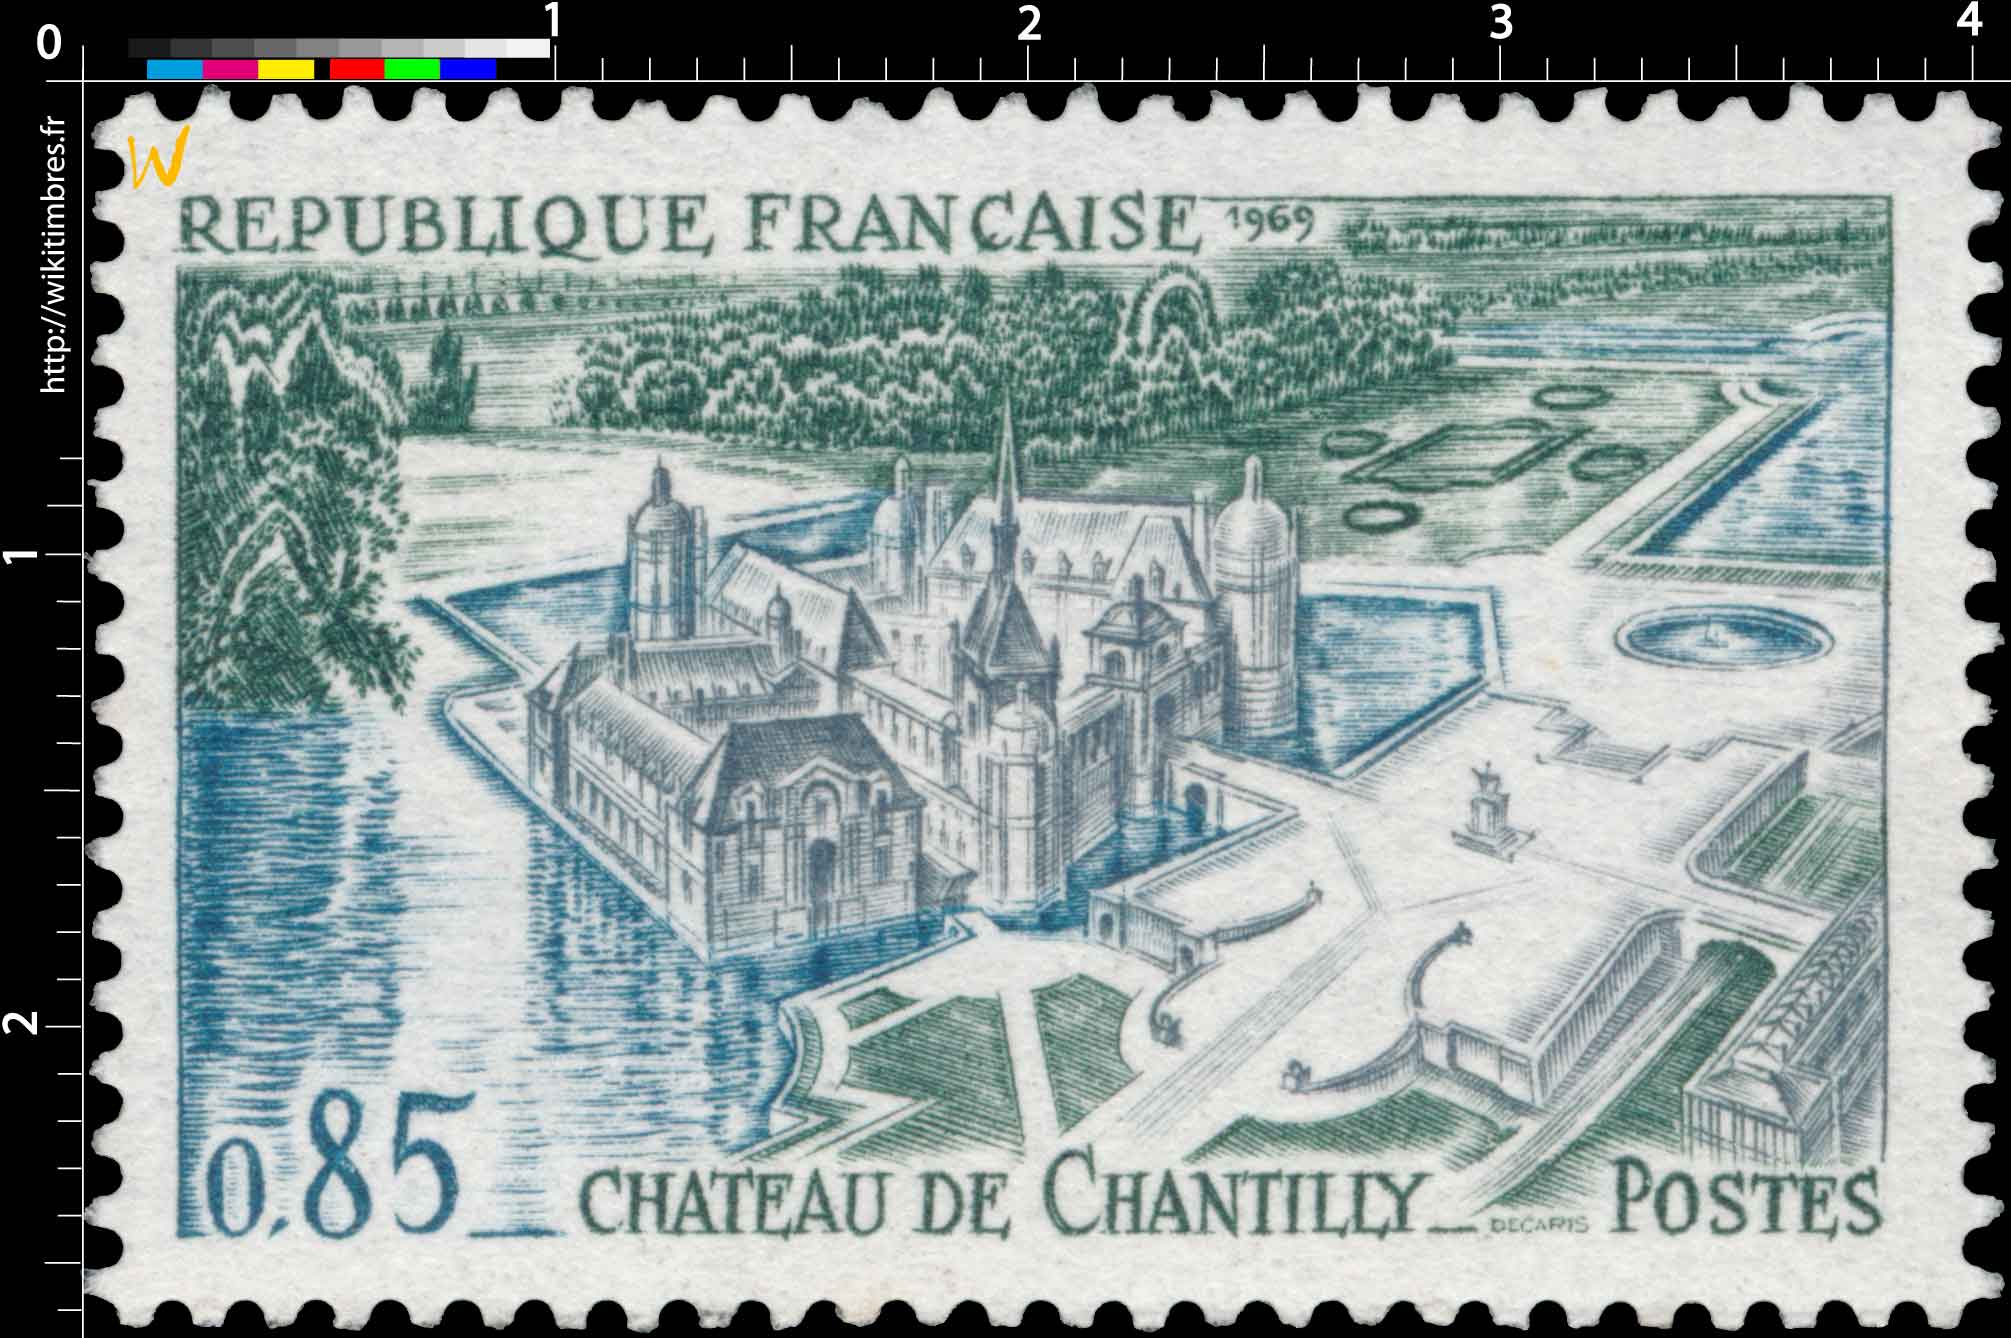 1969 CHÂTEAU DE CHANTILLY